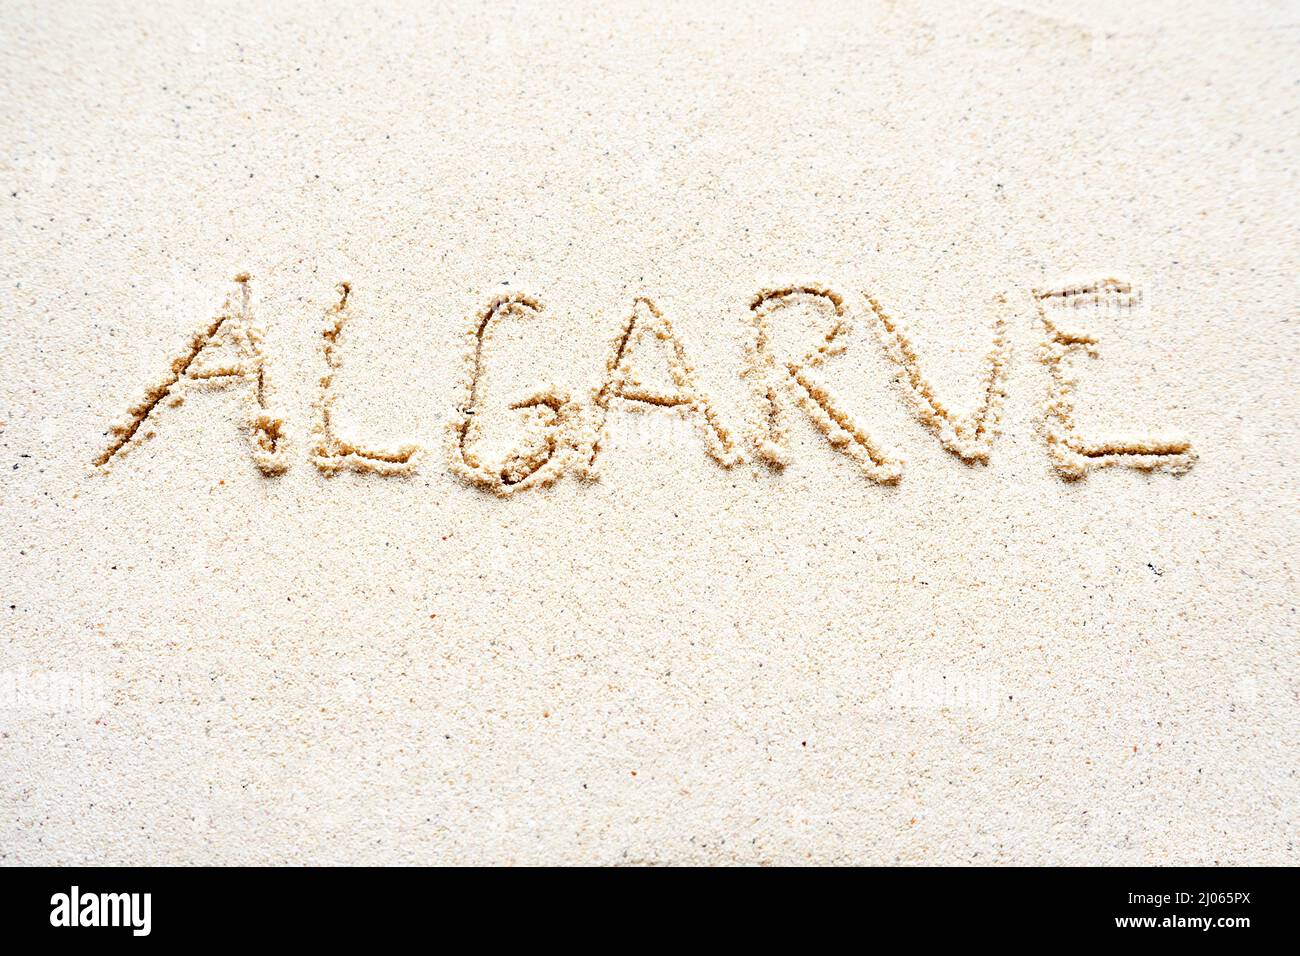 Scrivere a mano le parole 'Algarve' sulla sabbia della spiaggia Foto Stock